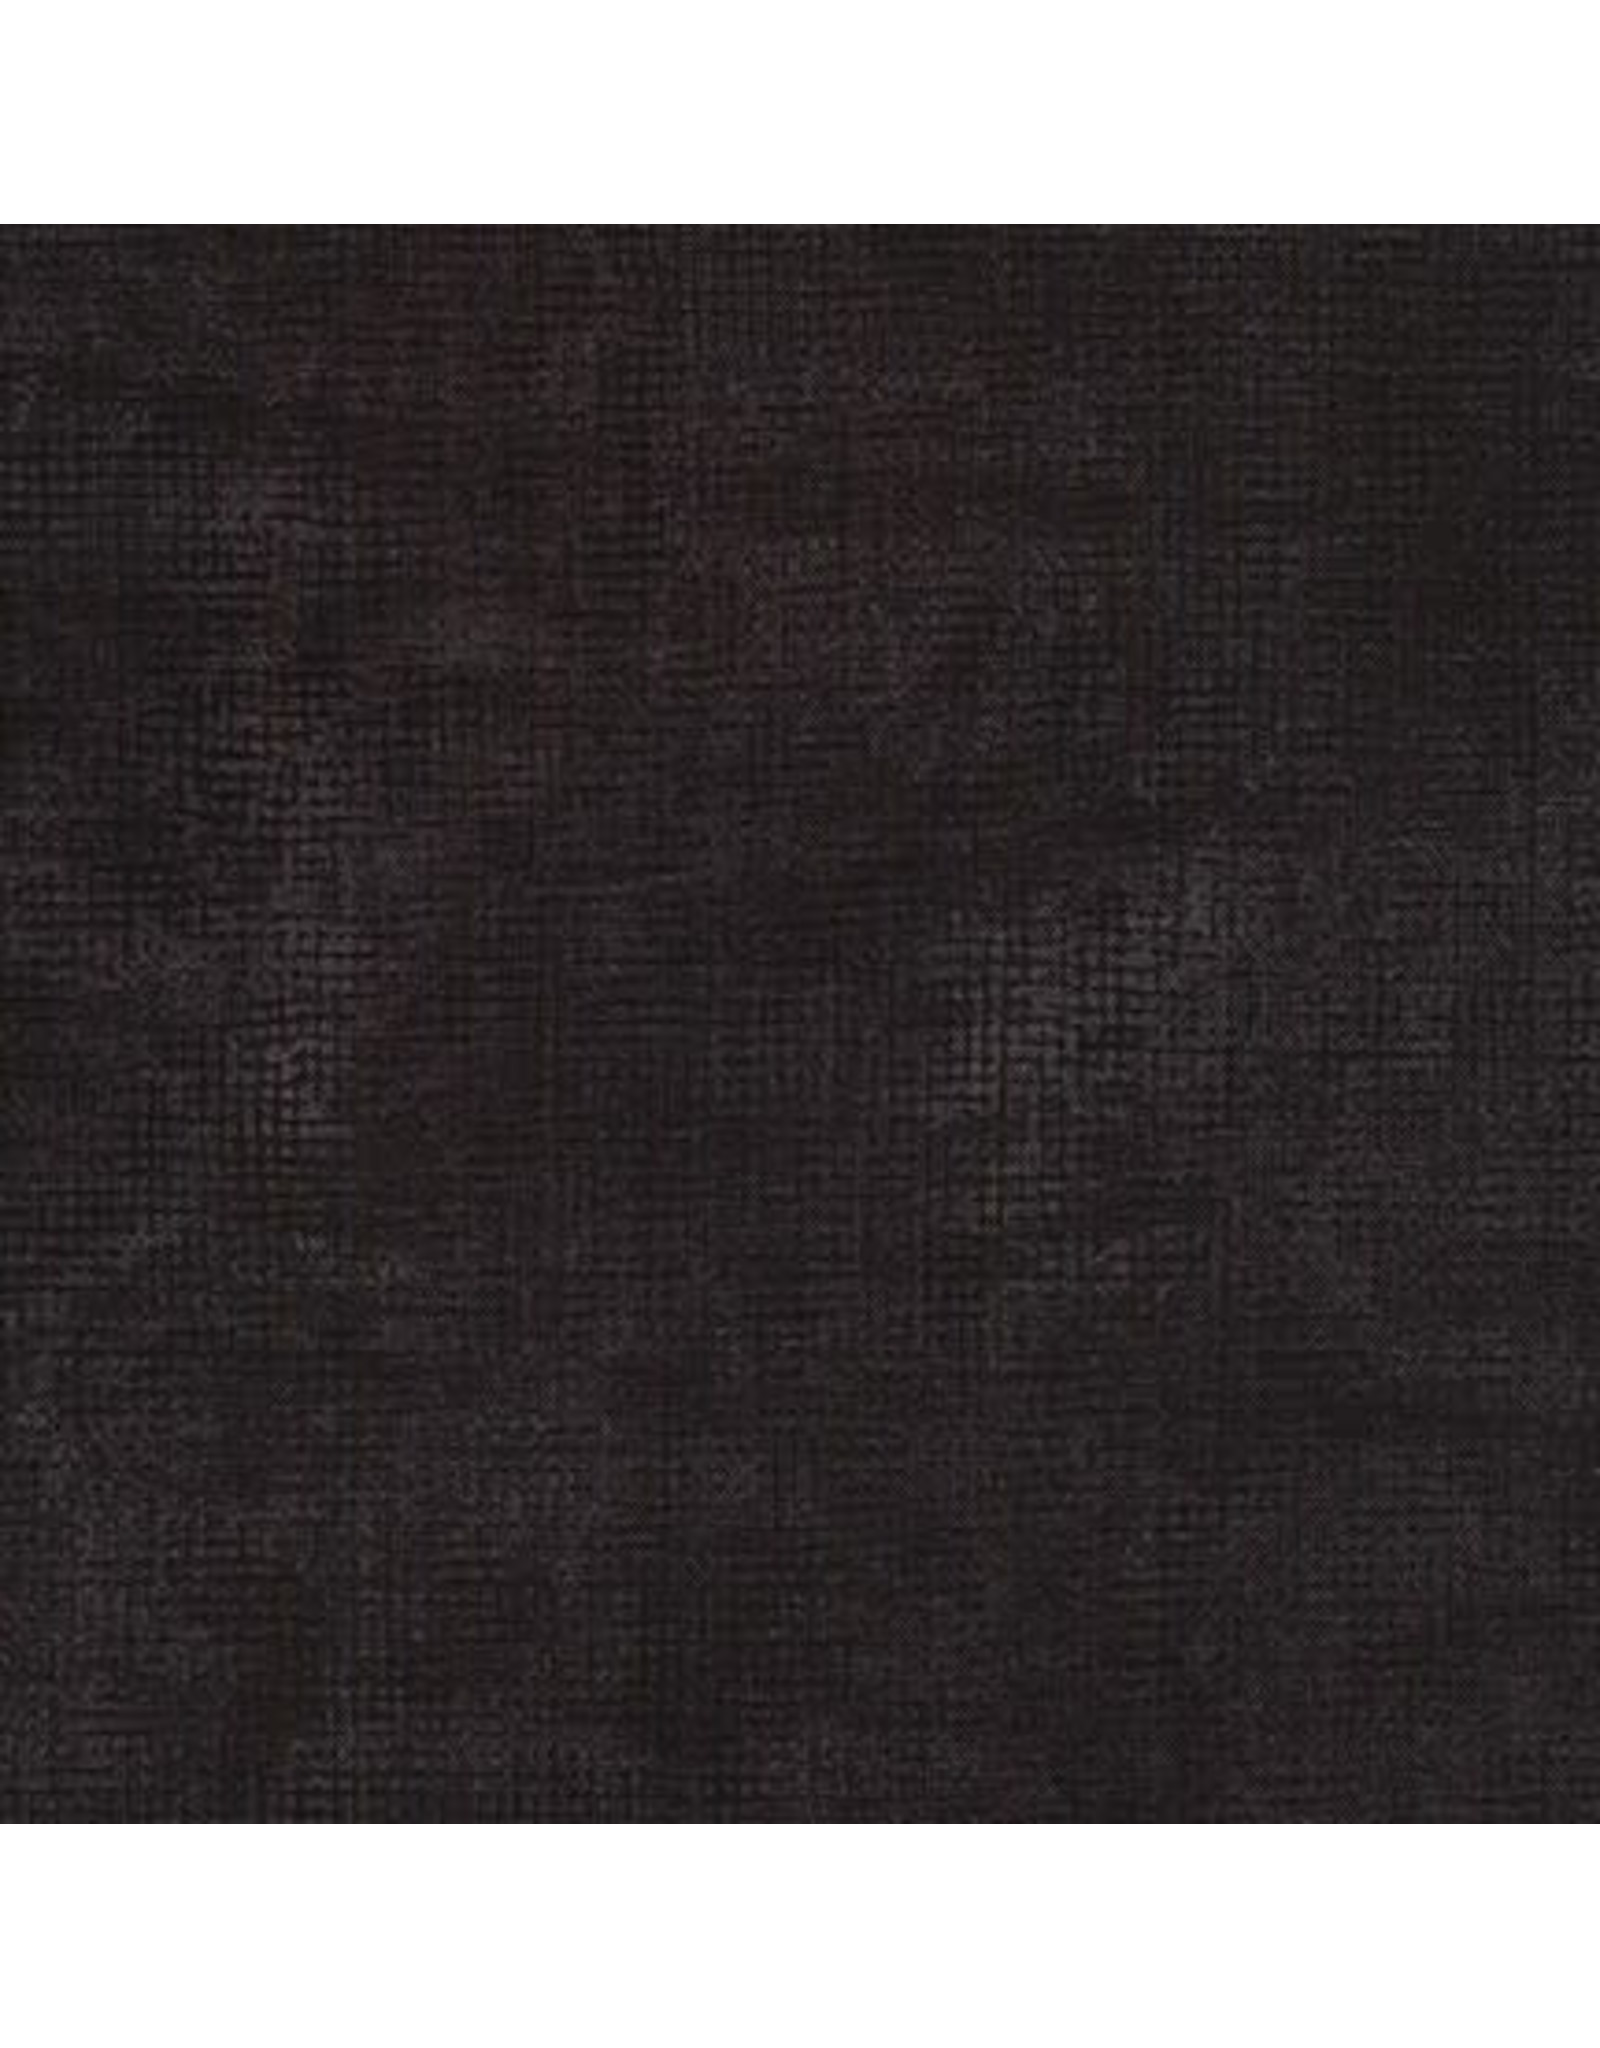 Jennifer Sampou Chalk and Charcoal, Black, Fabric Half-Yards